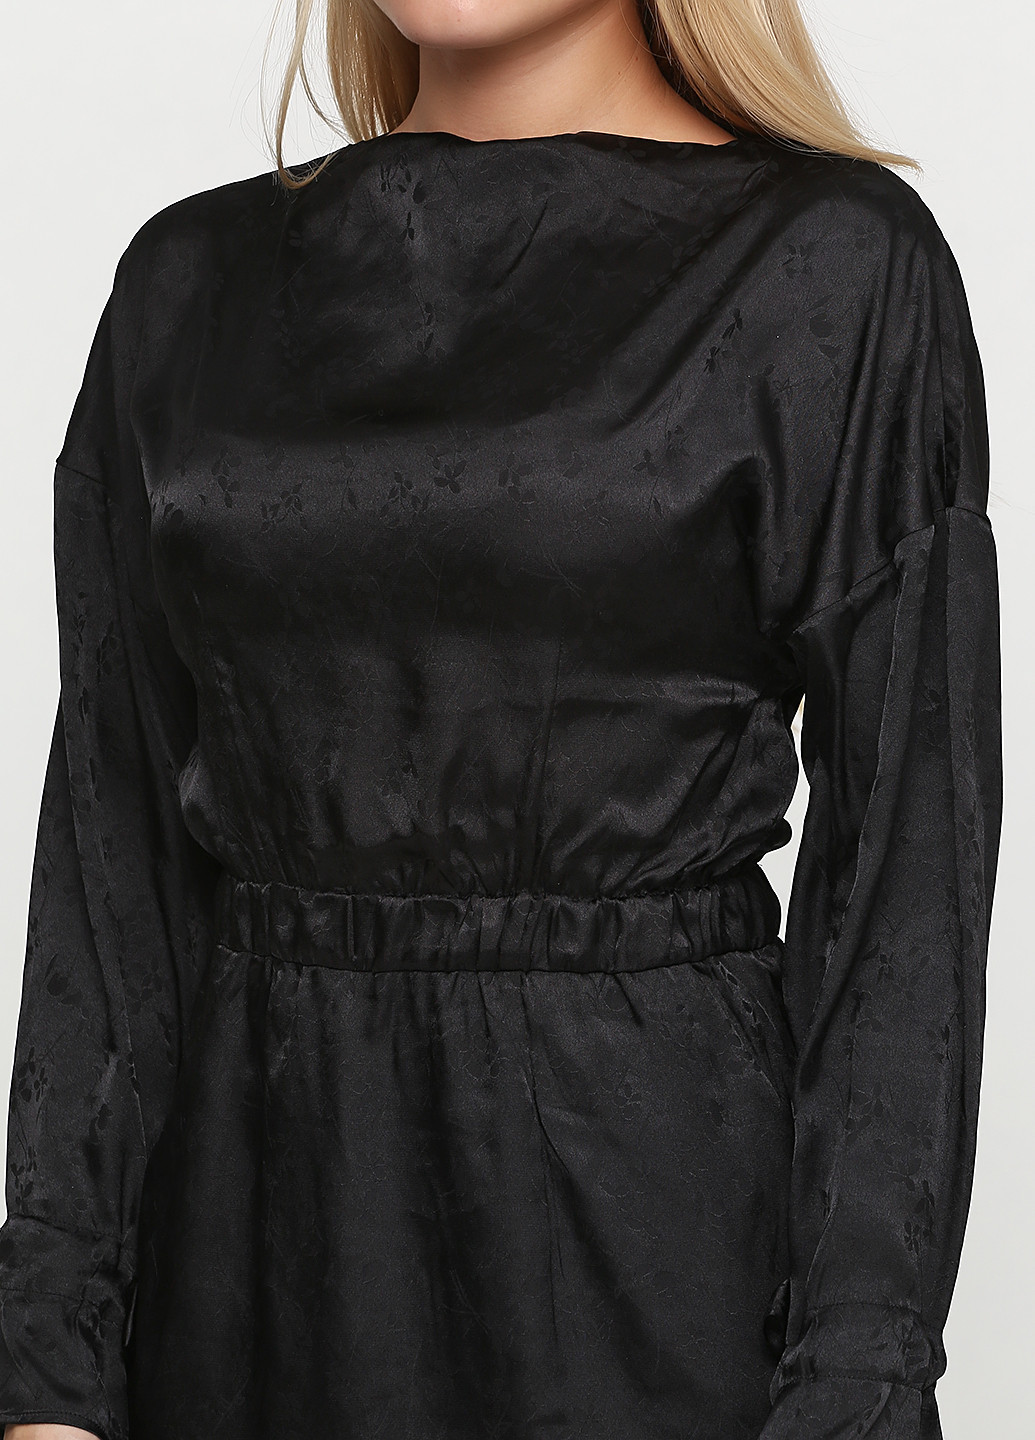 Черное коктейльное платье H&M с рисунком